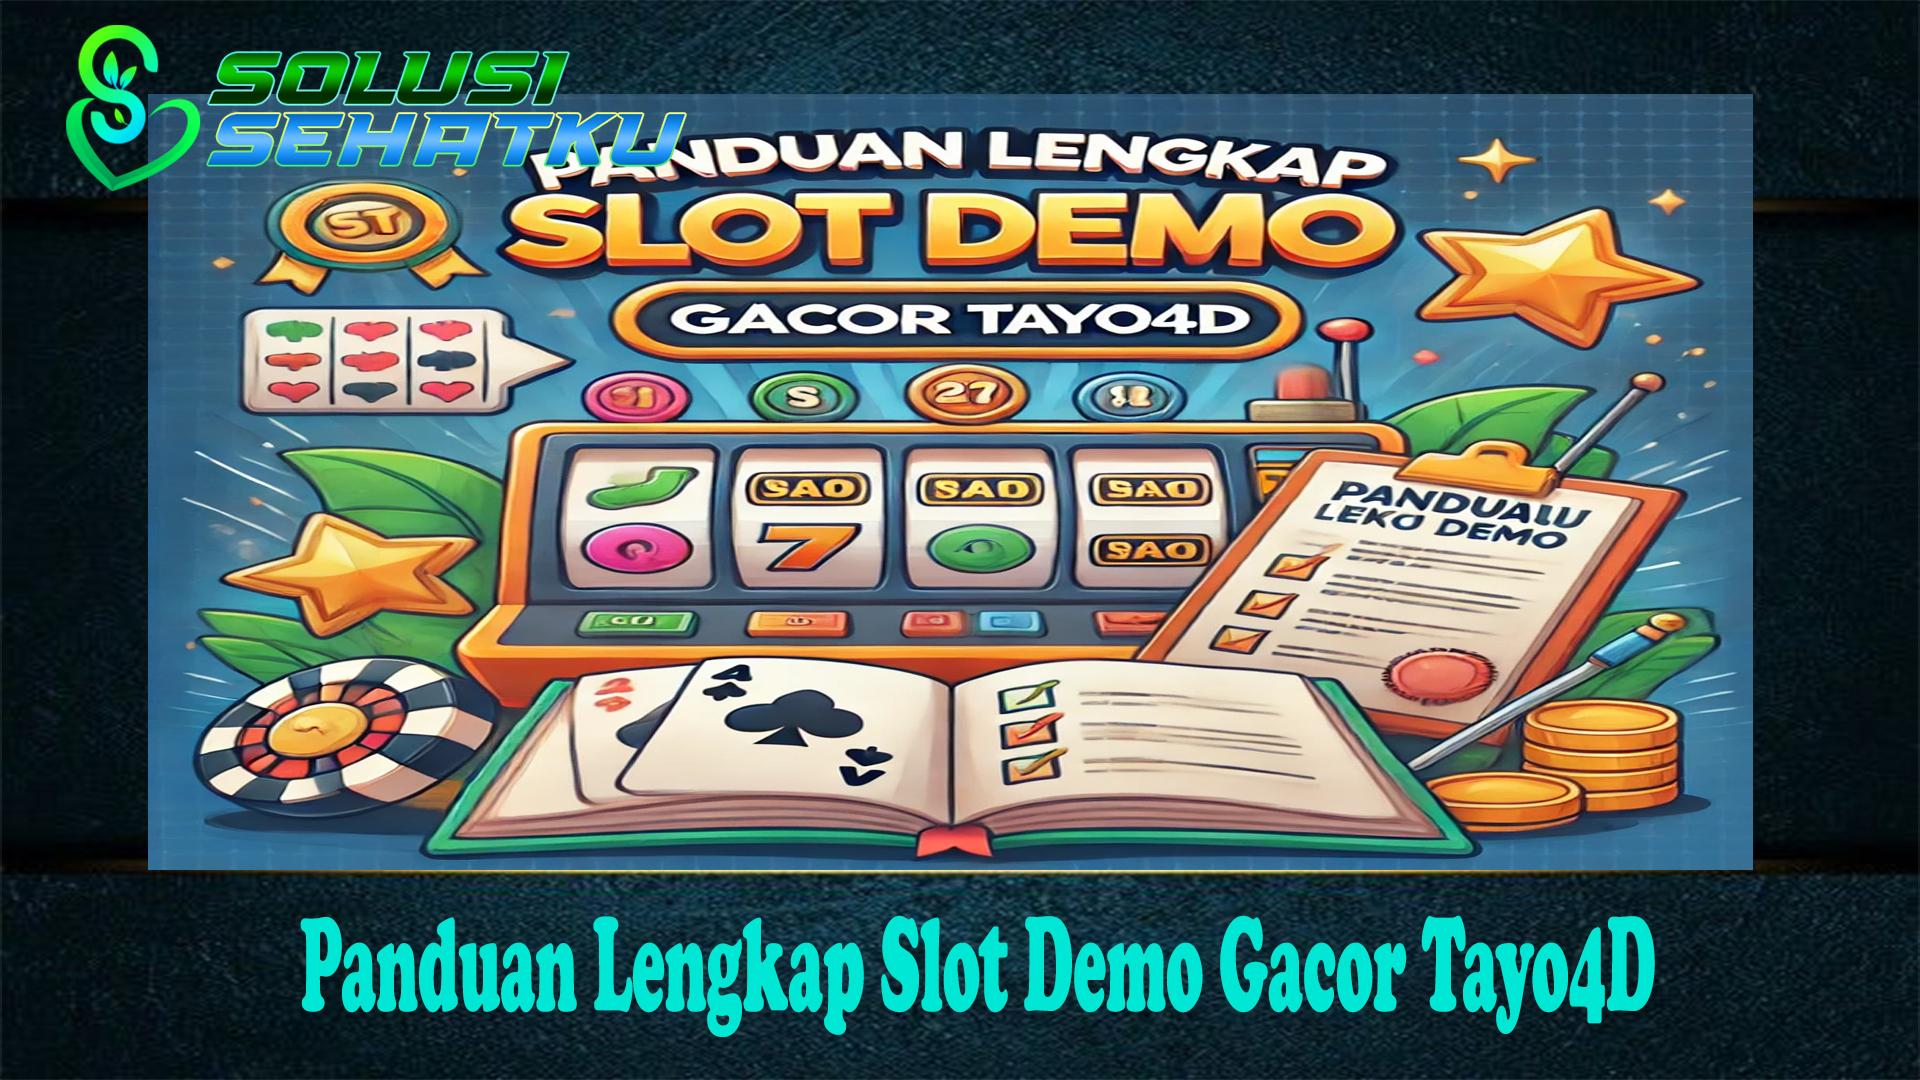 Panduan Lengkap Slot Demo Gacor Tayo4D